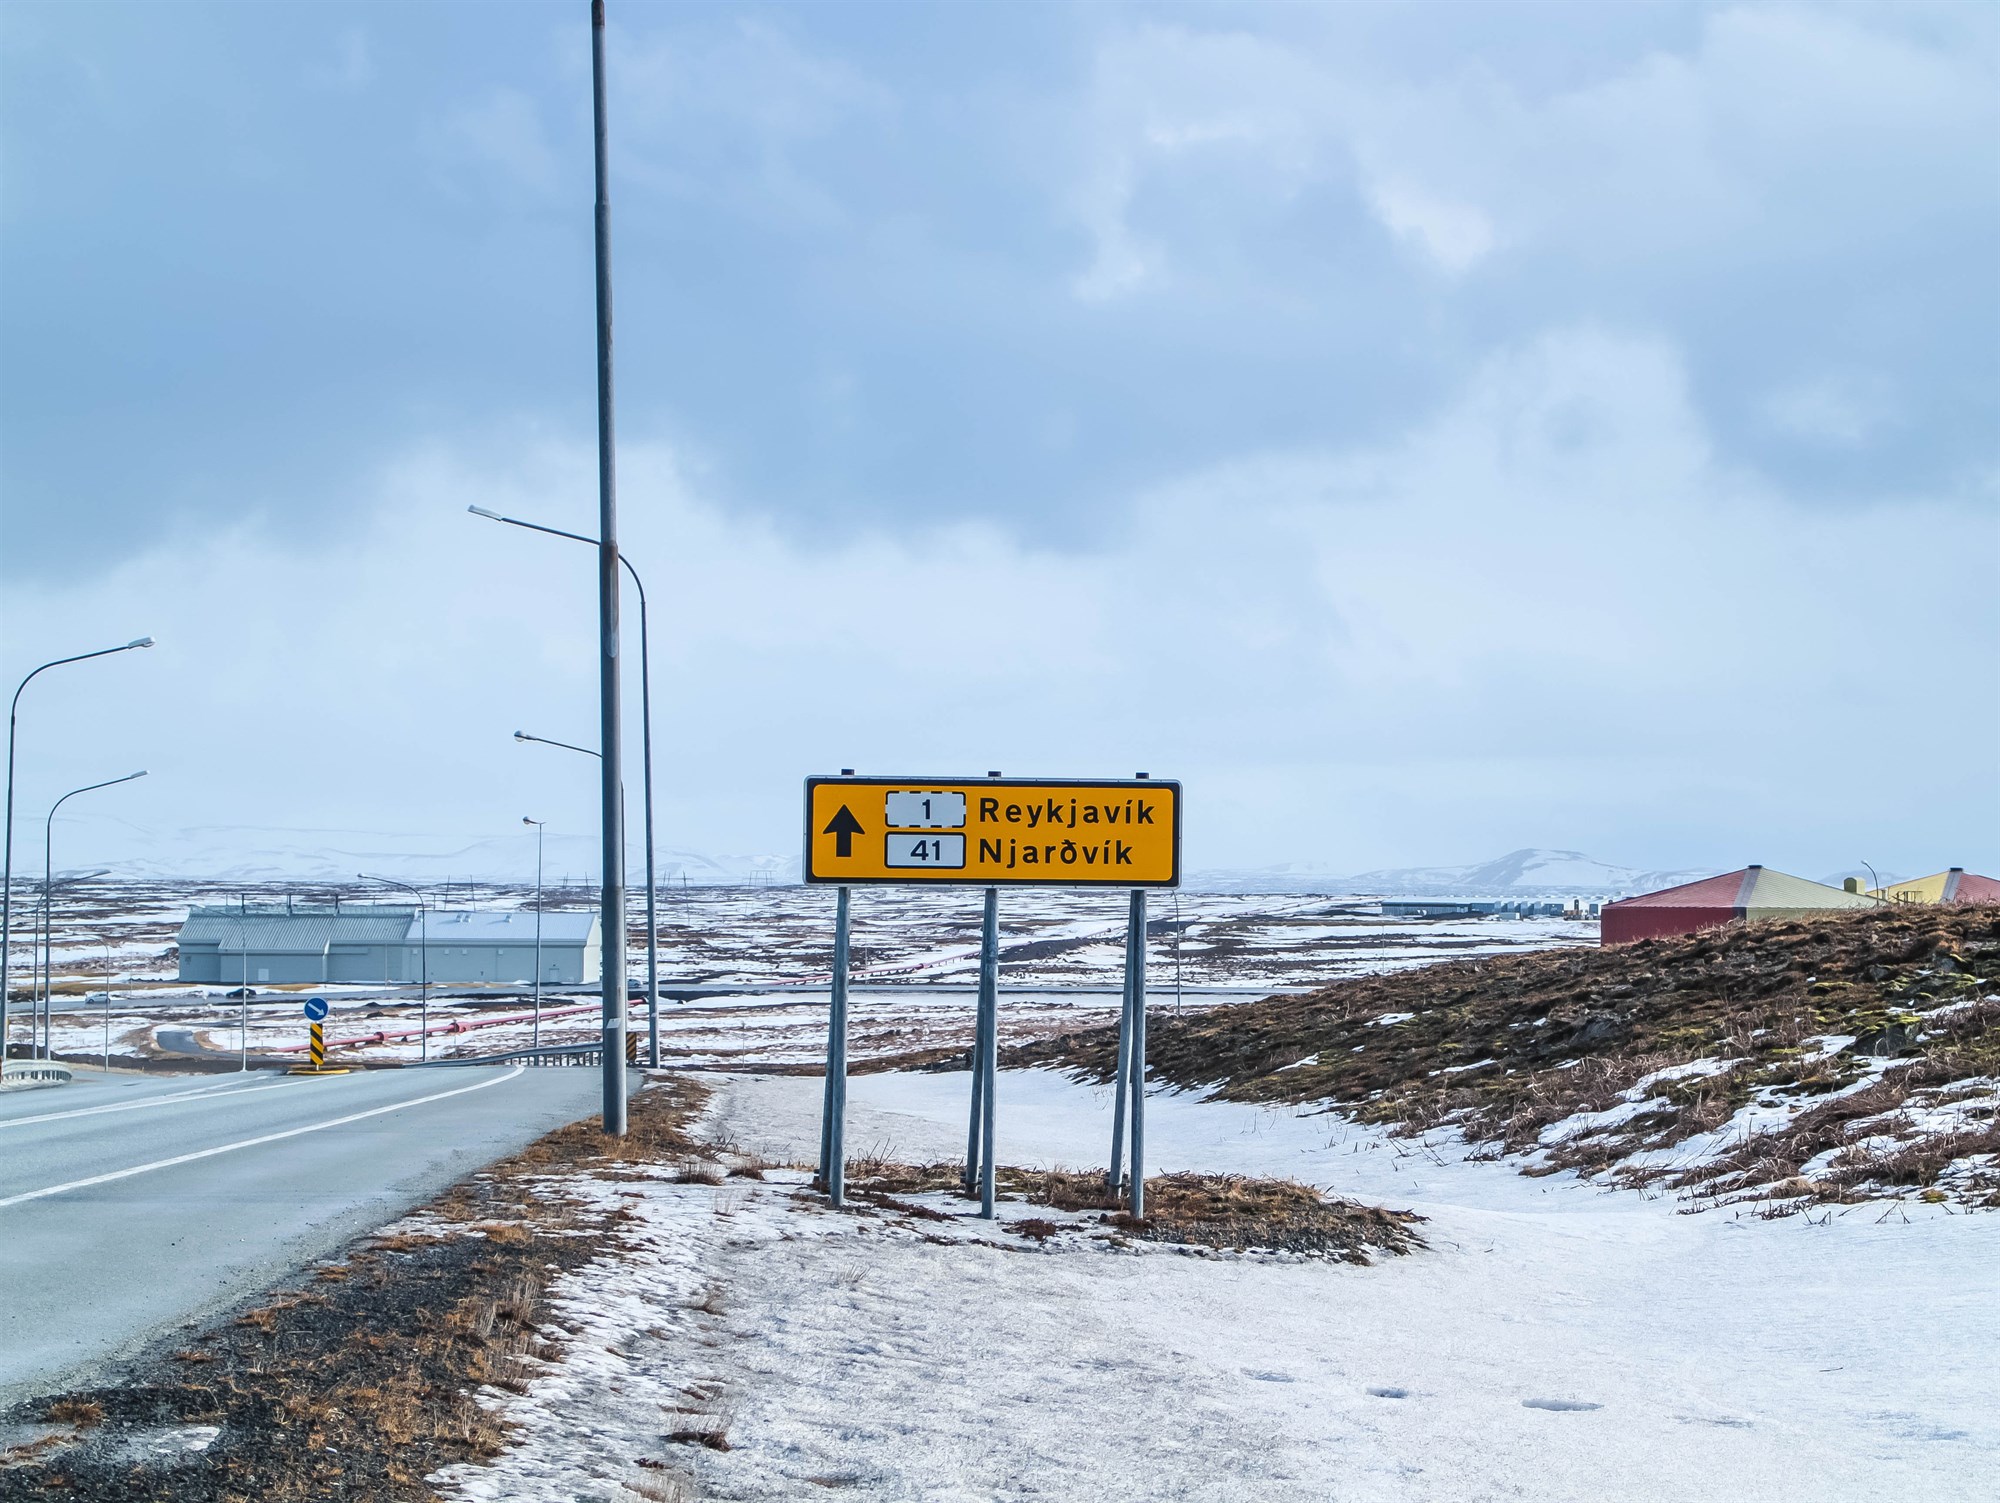 Road sign for Reykjavik in Keflavik, Iceland